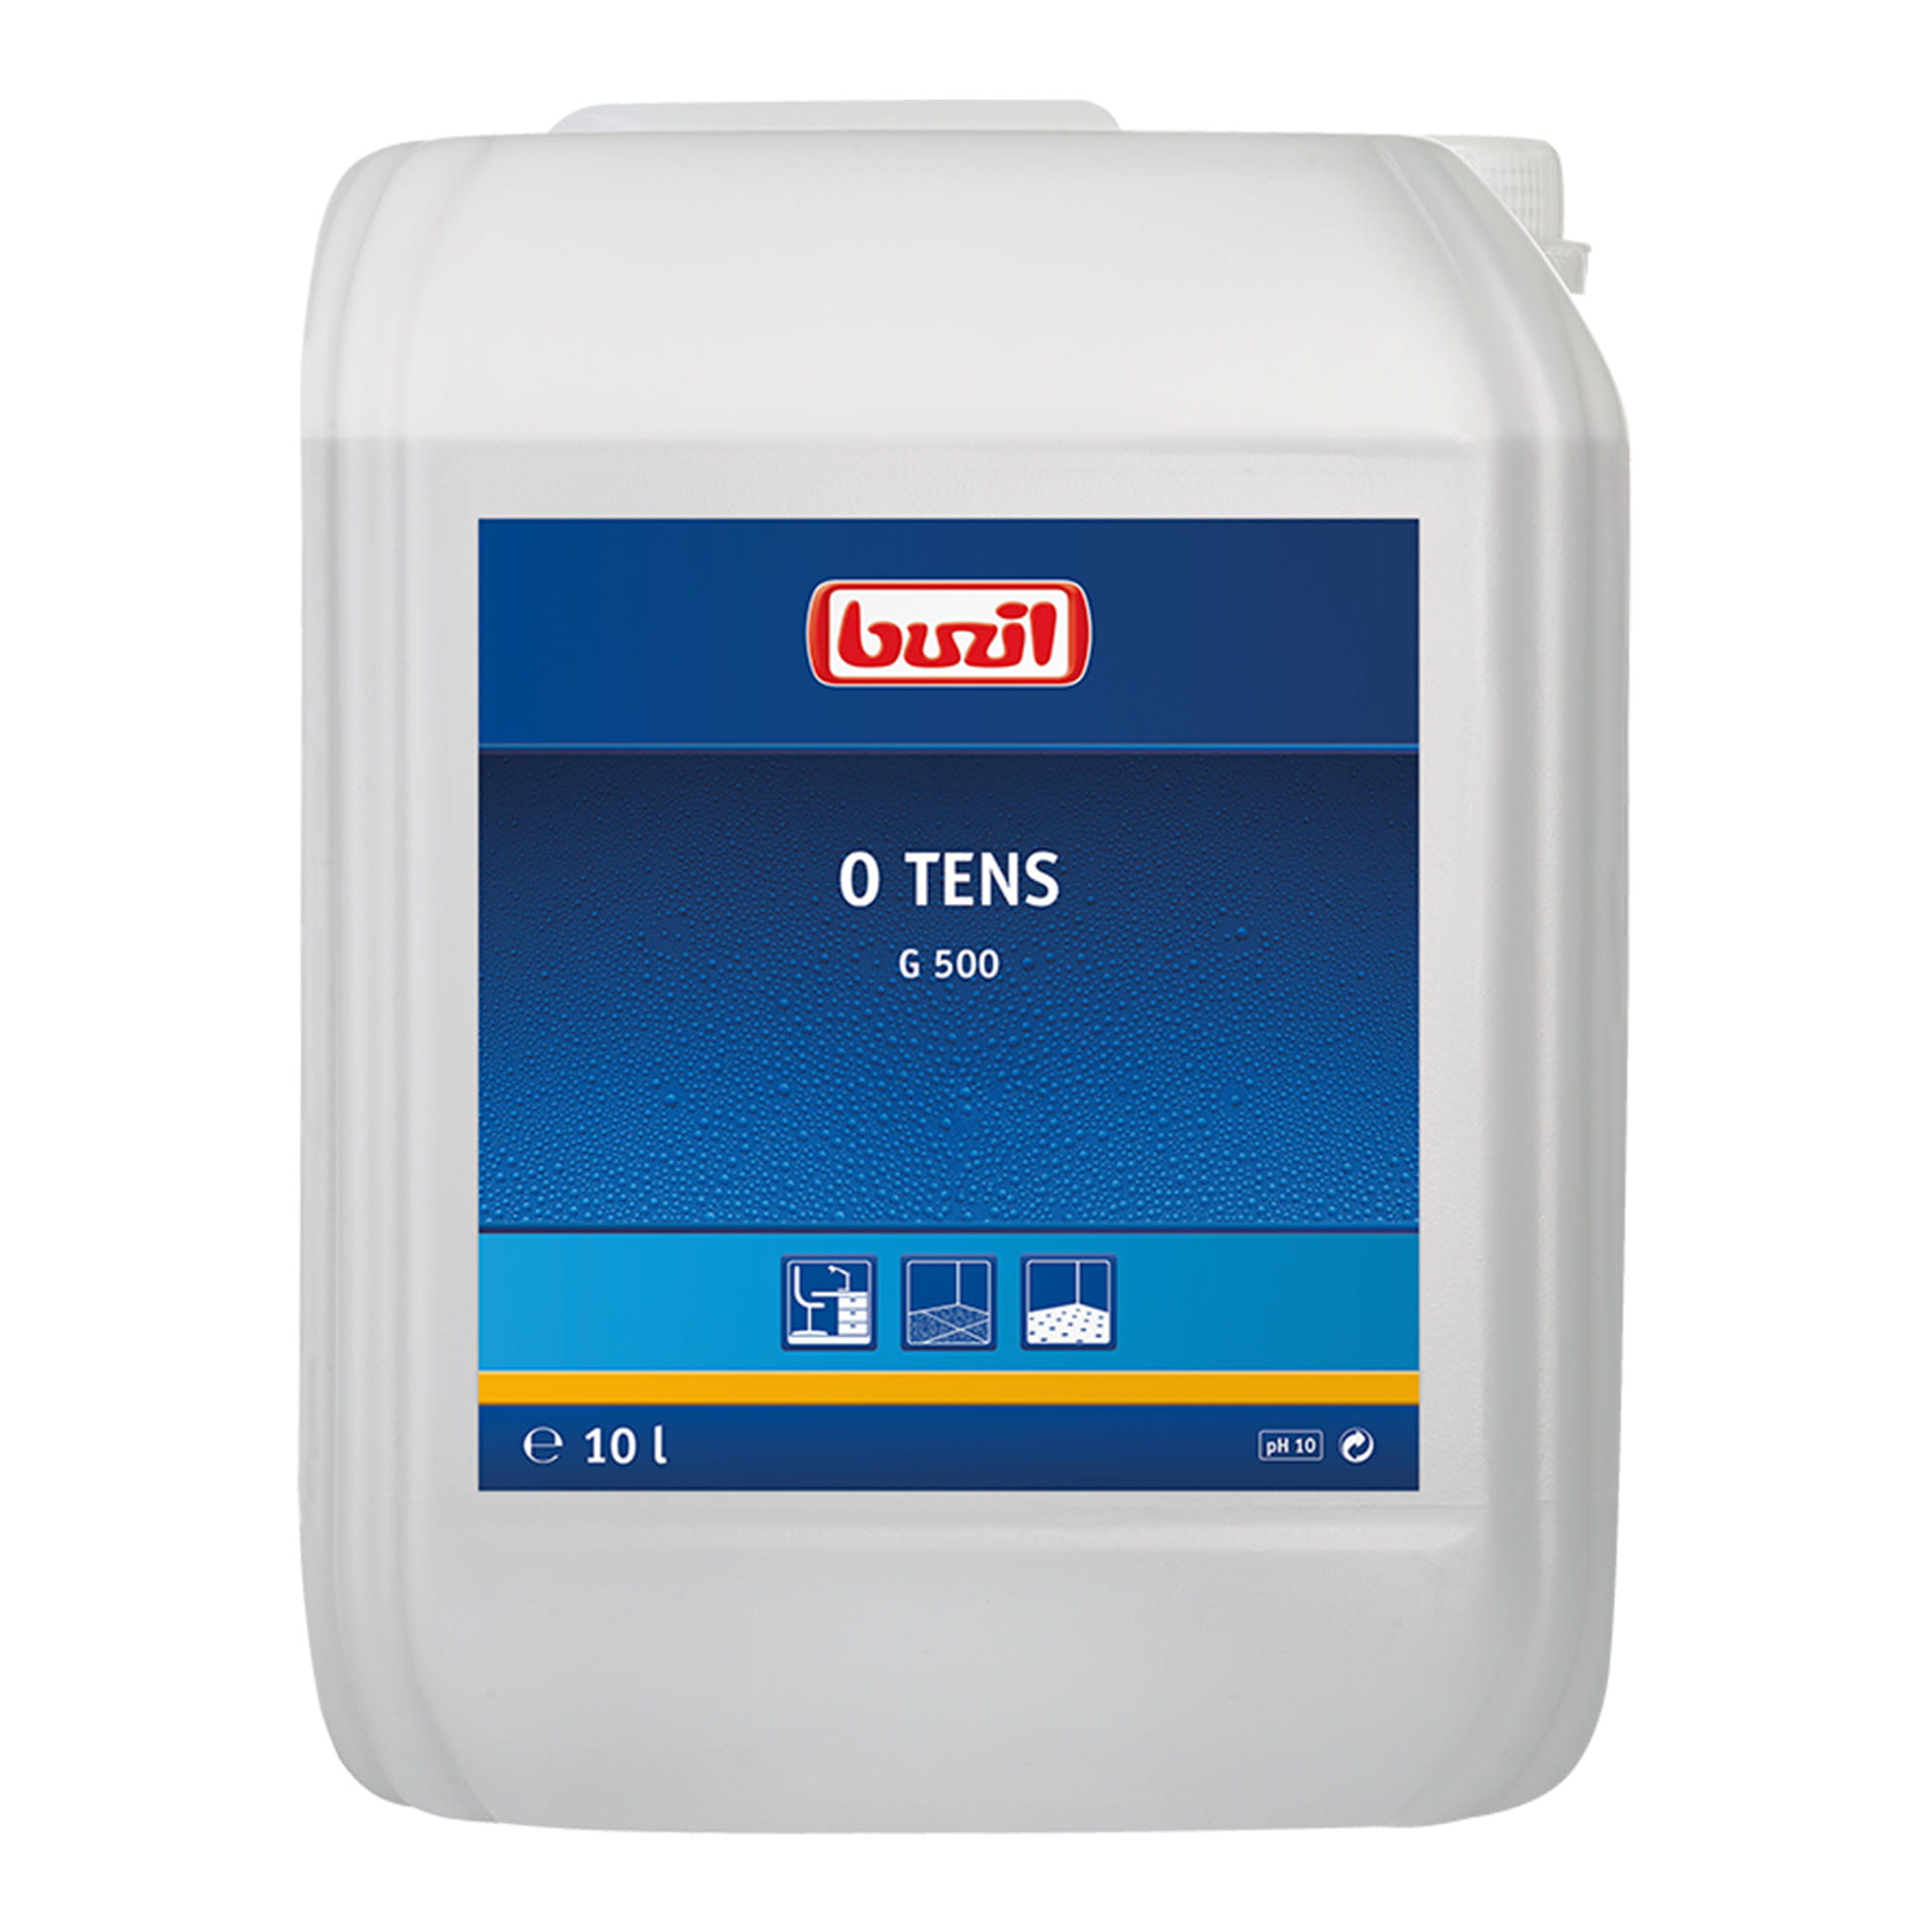 Buzil O Tens G500 tensidfreier Universalreiniger 10 Liter Kanister G500-0010RA_1